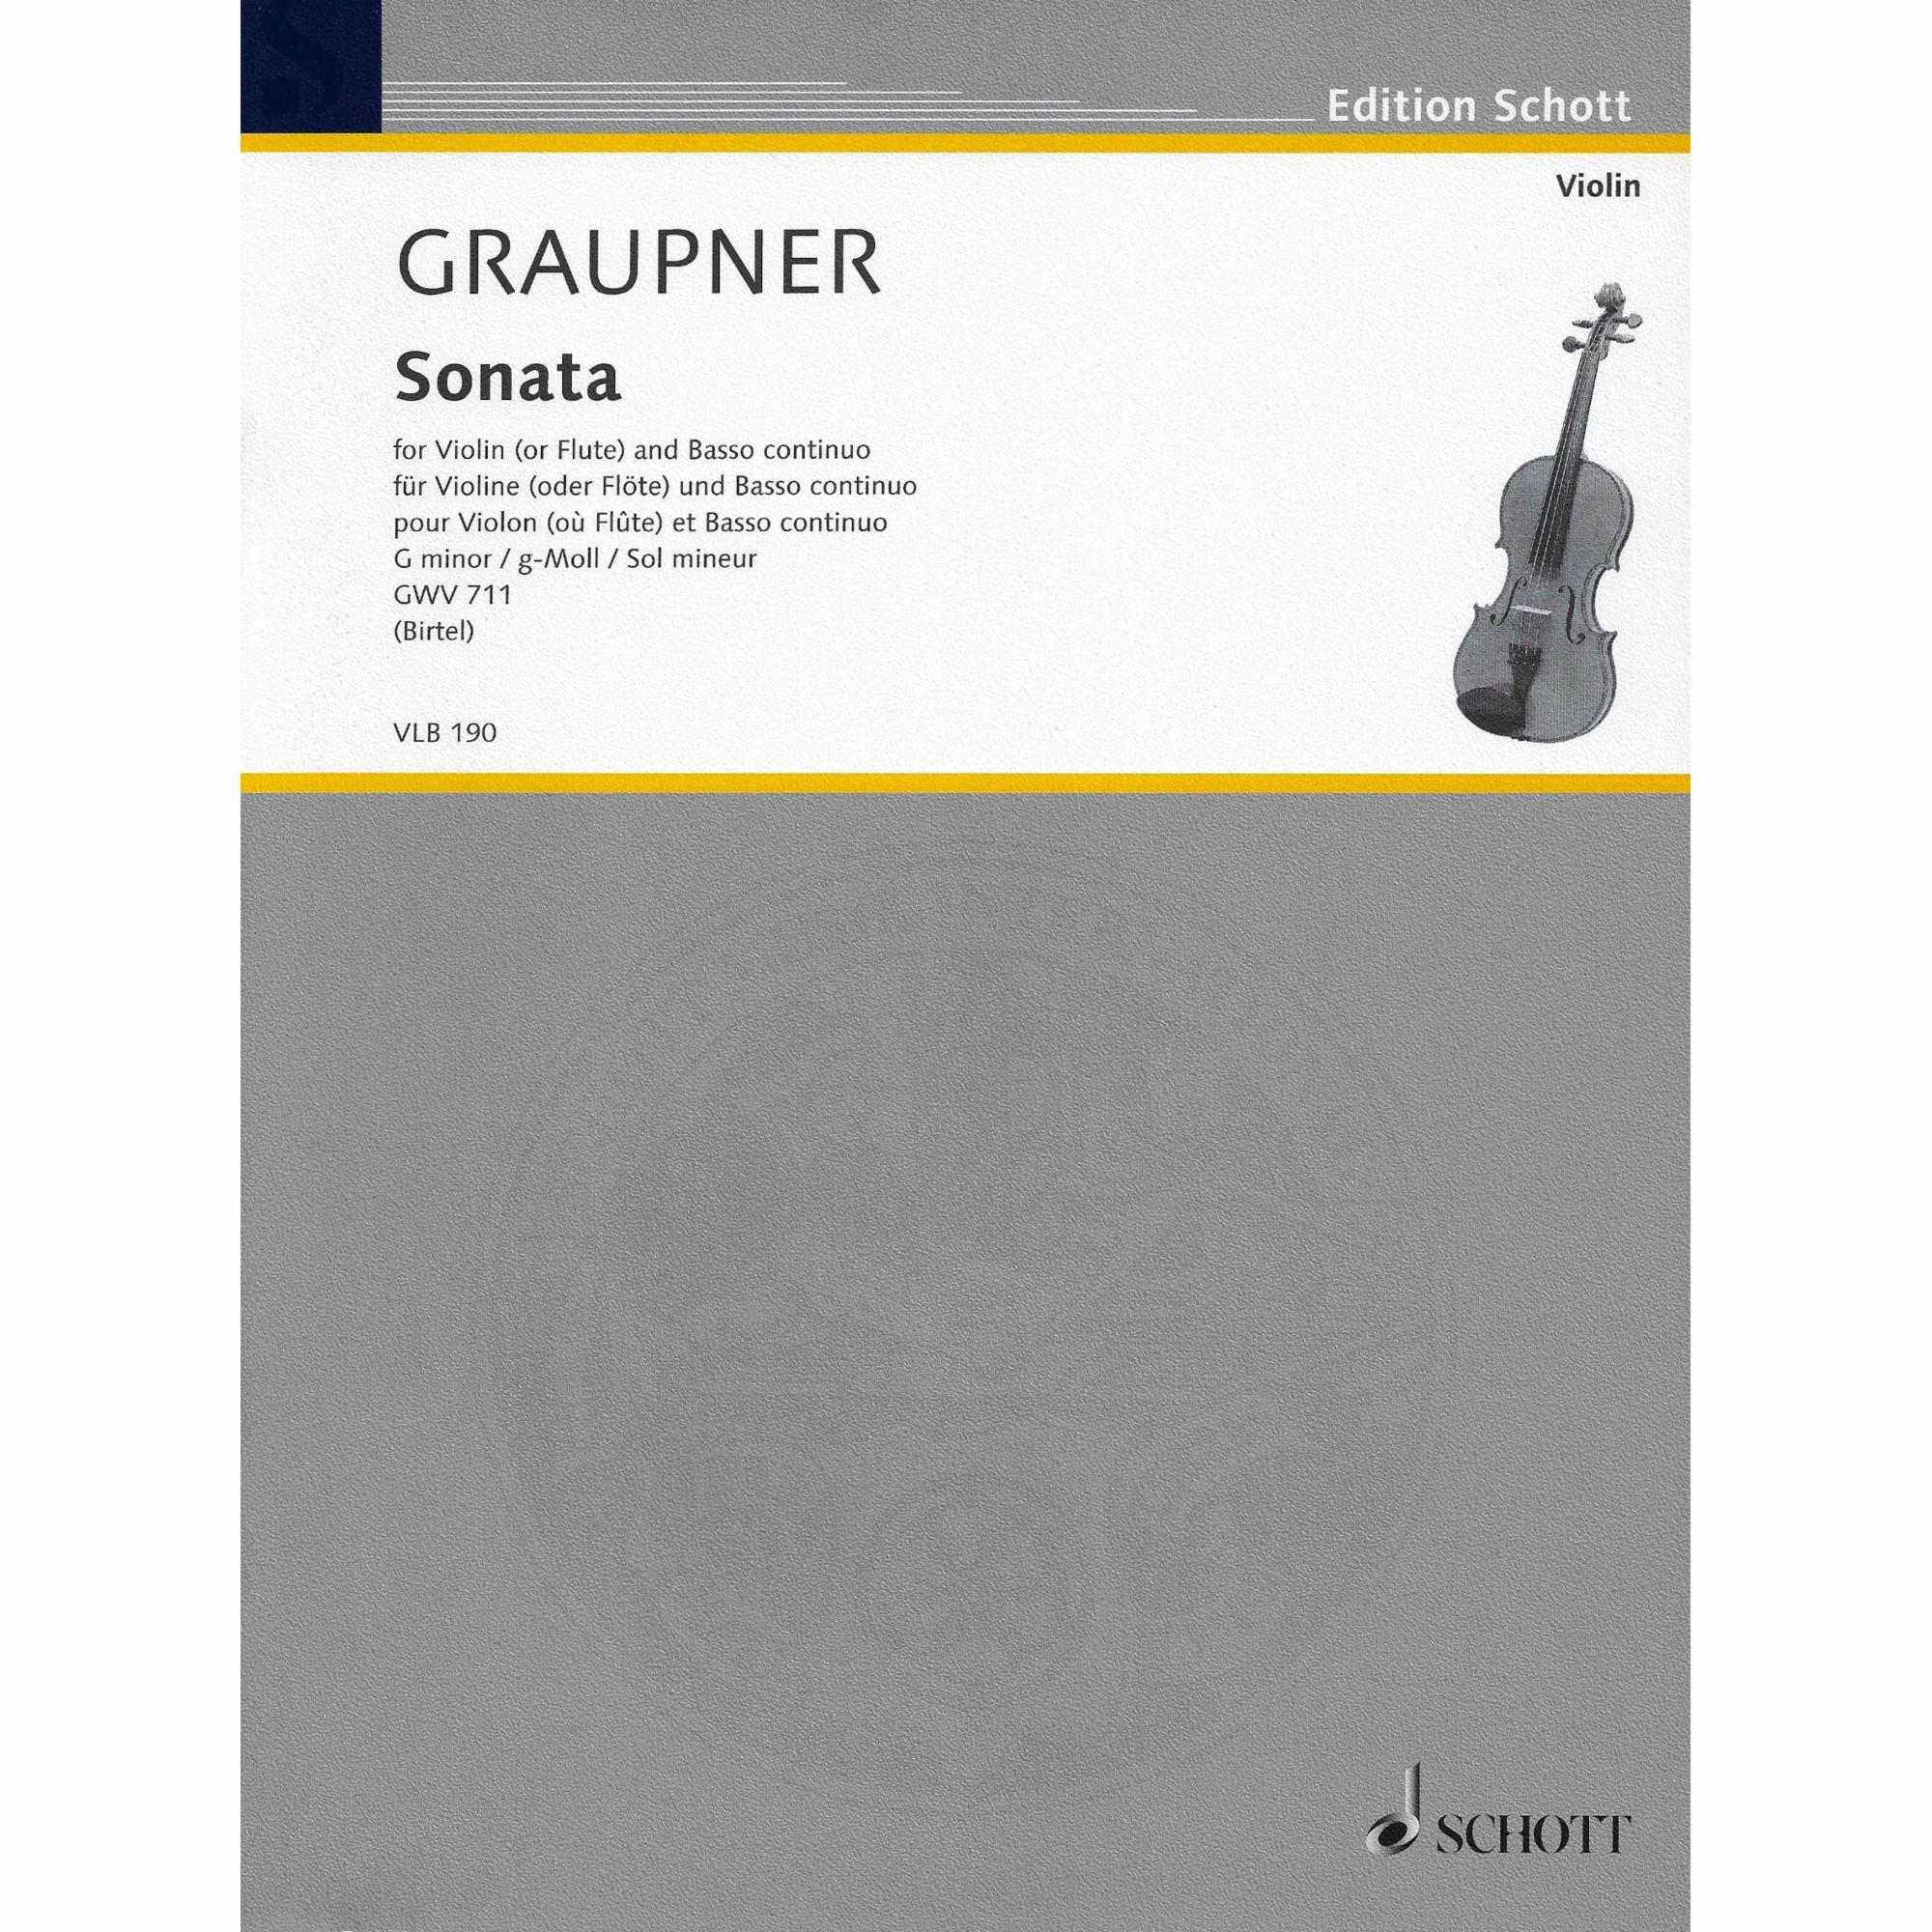 Graupner -- Sonata in G Minor, GWV 711 for Violin and Basso Continuo